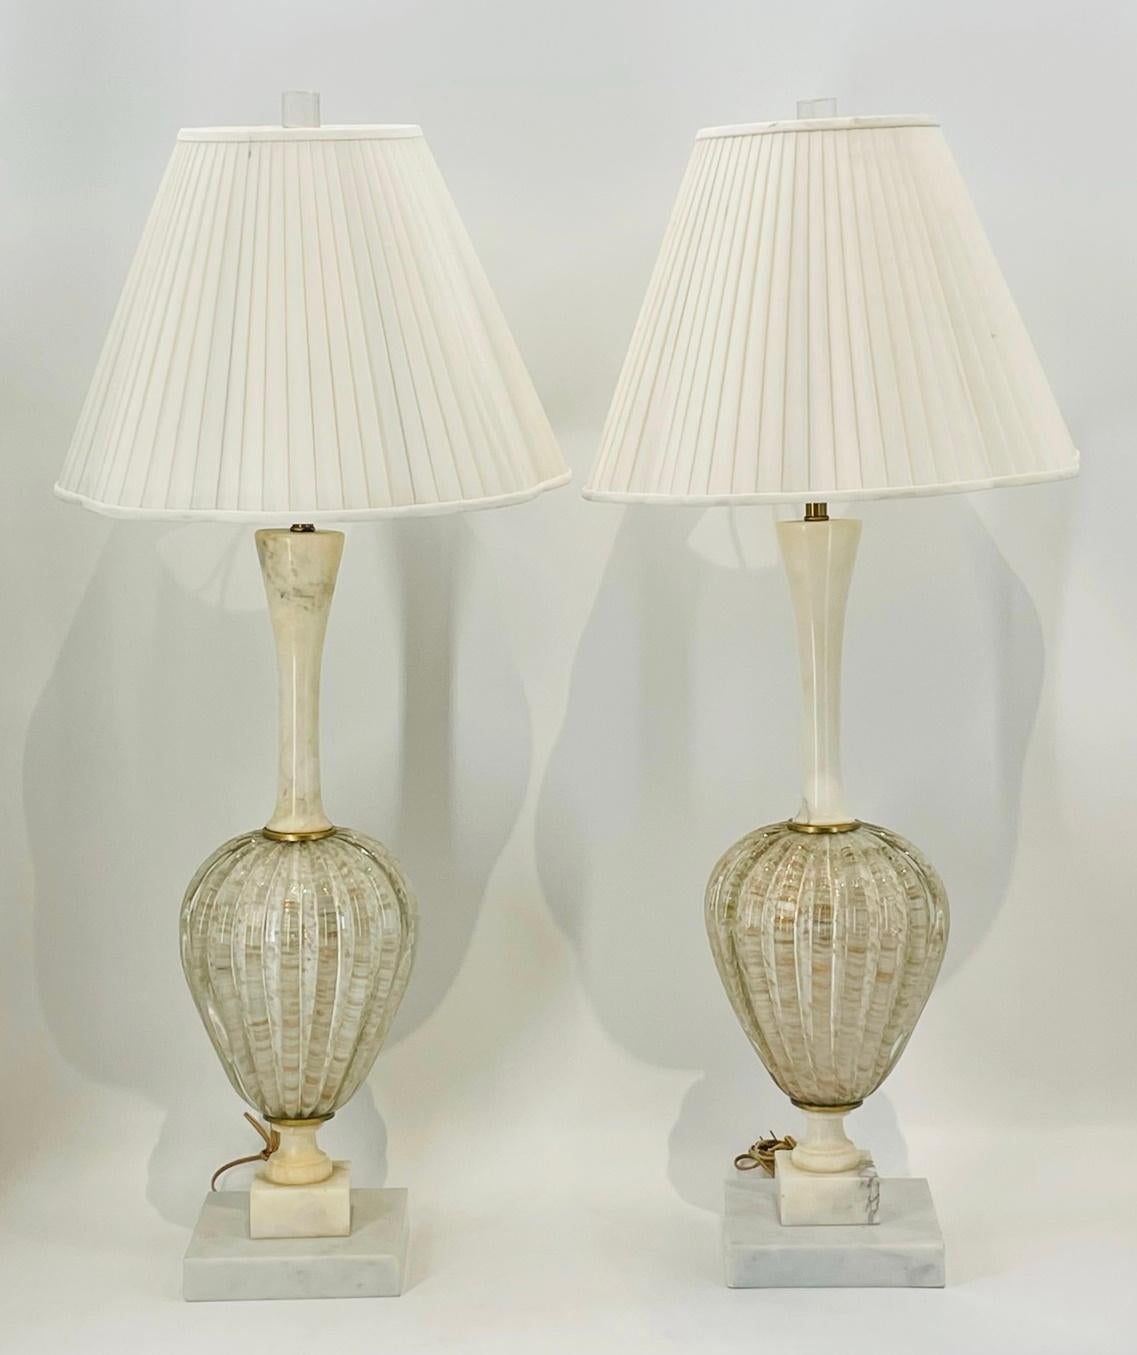 Voici notre exquise paire de lampes de table en verre de Murano et en albâtre, tout droit sorties de l'héritage artistique italien des années 1960. Ces lampes captivantes allient sans effort la beauté intemporelle de l'albâtre à l'artisanat complexe